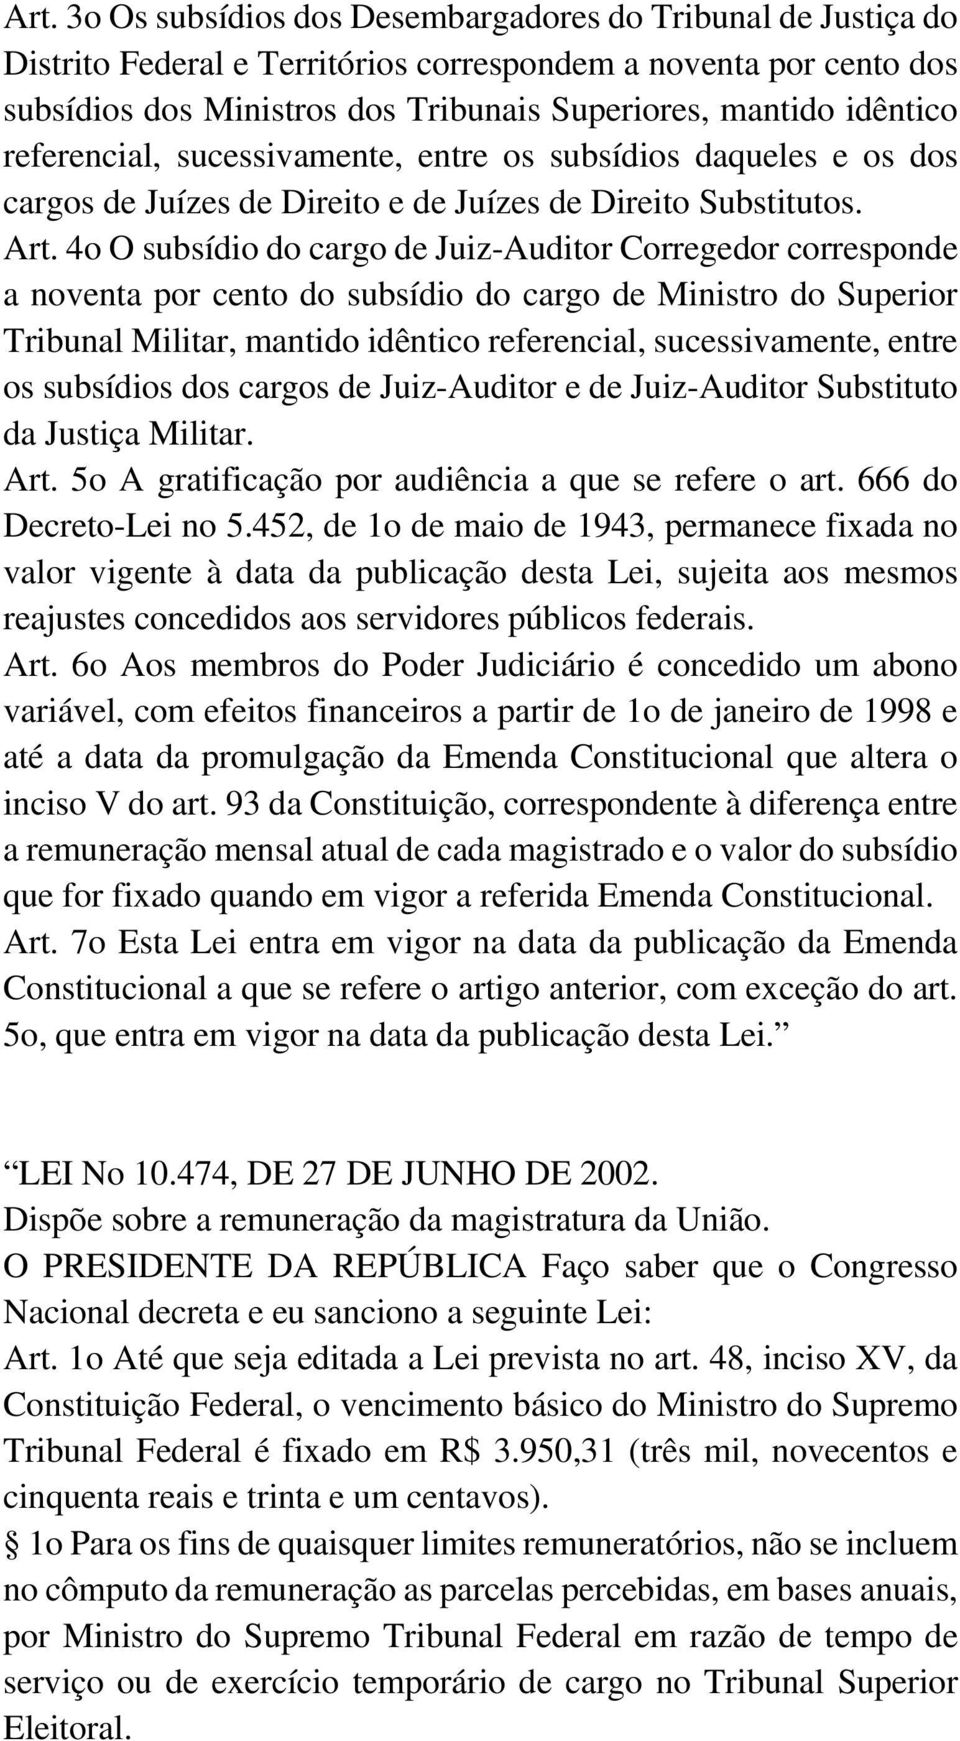 4o O subsídio do cargo de Juiz-Auditor Corregedor corresponde a noventa por cento do subsídio do cargo de Ministro do Superior Tribunal Militar, mantido idêntico referencial, sucessivamente, entre os